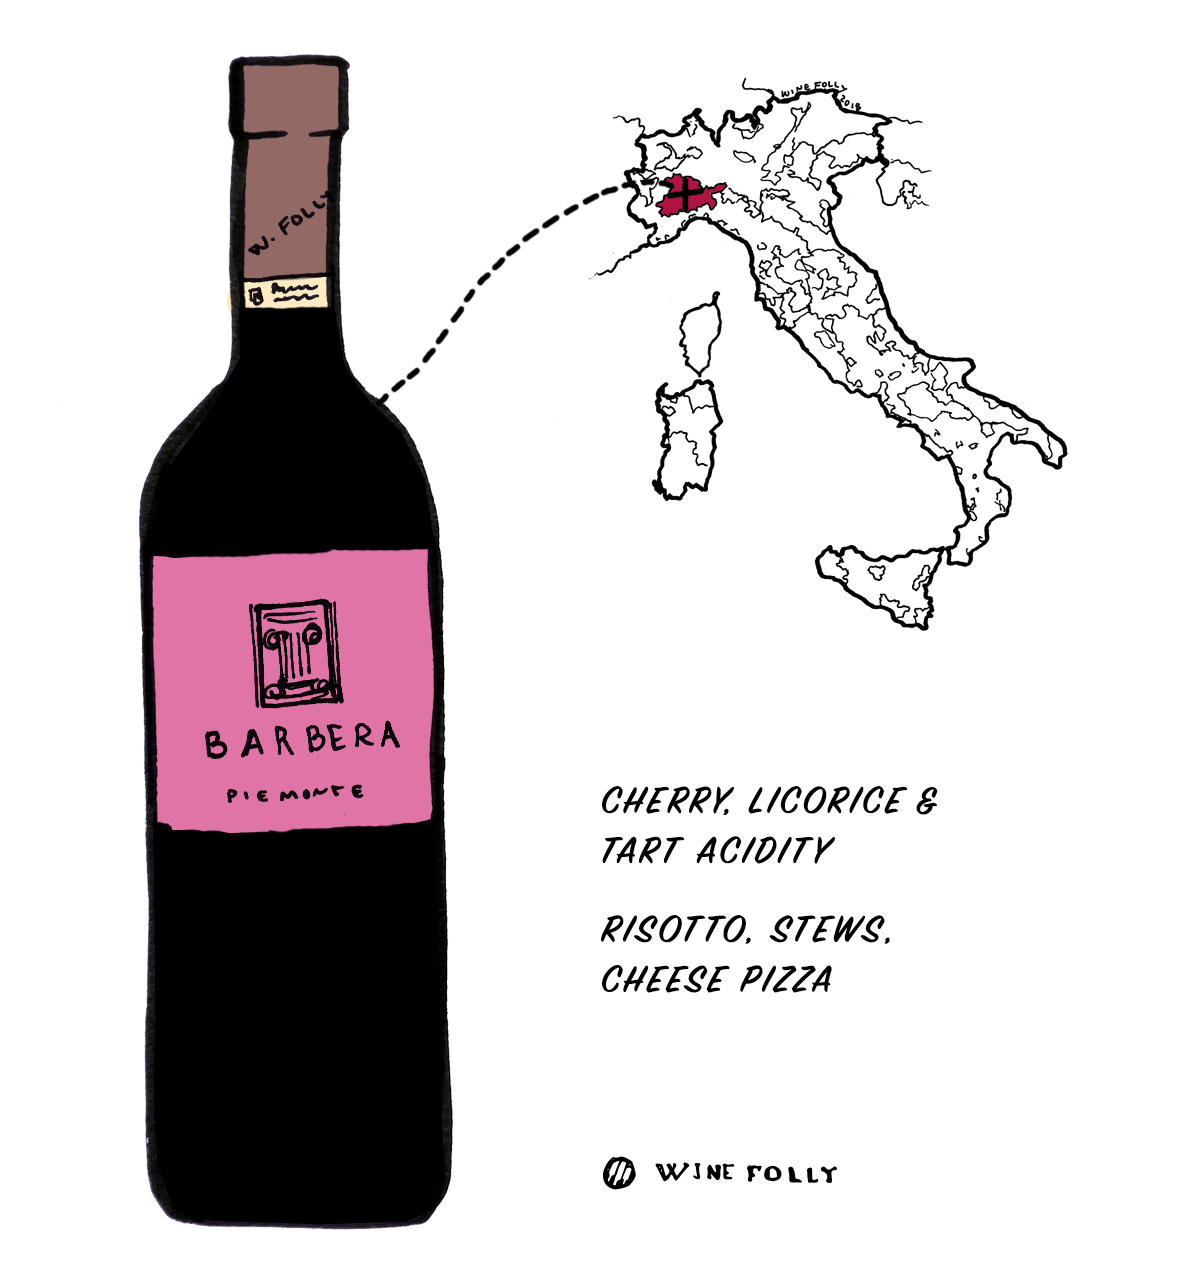 इटली से बारबेरा रेड वाइन अंगूर - इतालवी शराब में शुरुआती के लिए बढ़िया विकल्प - वाइन फॉली द्वारा चित्रण